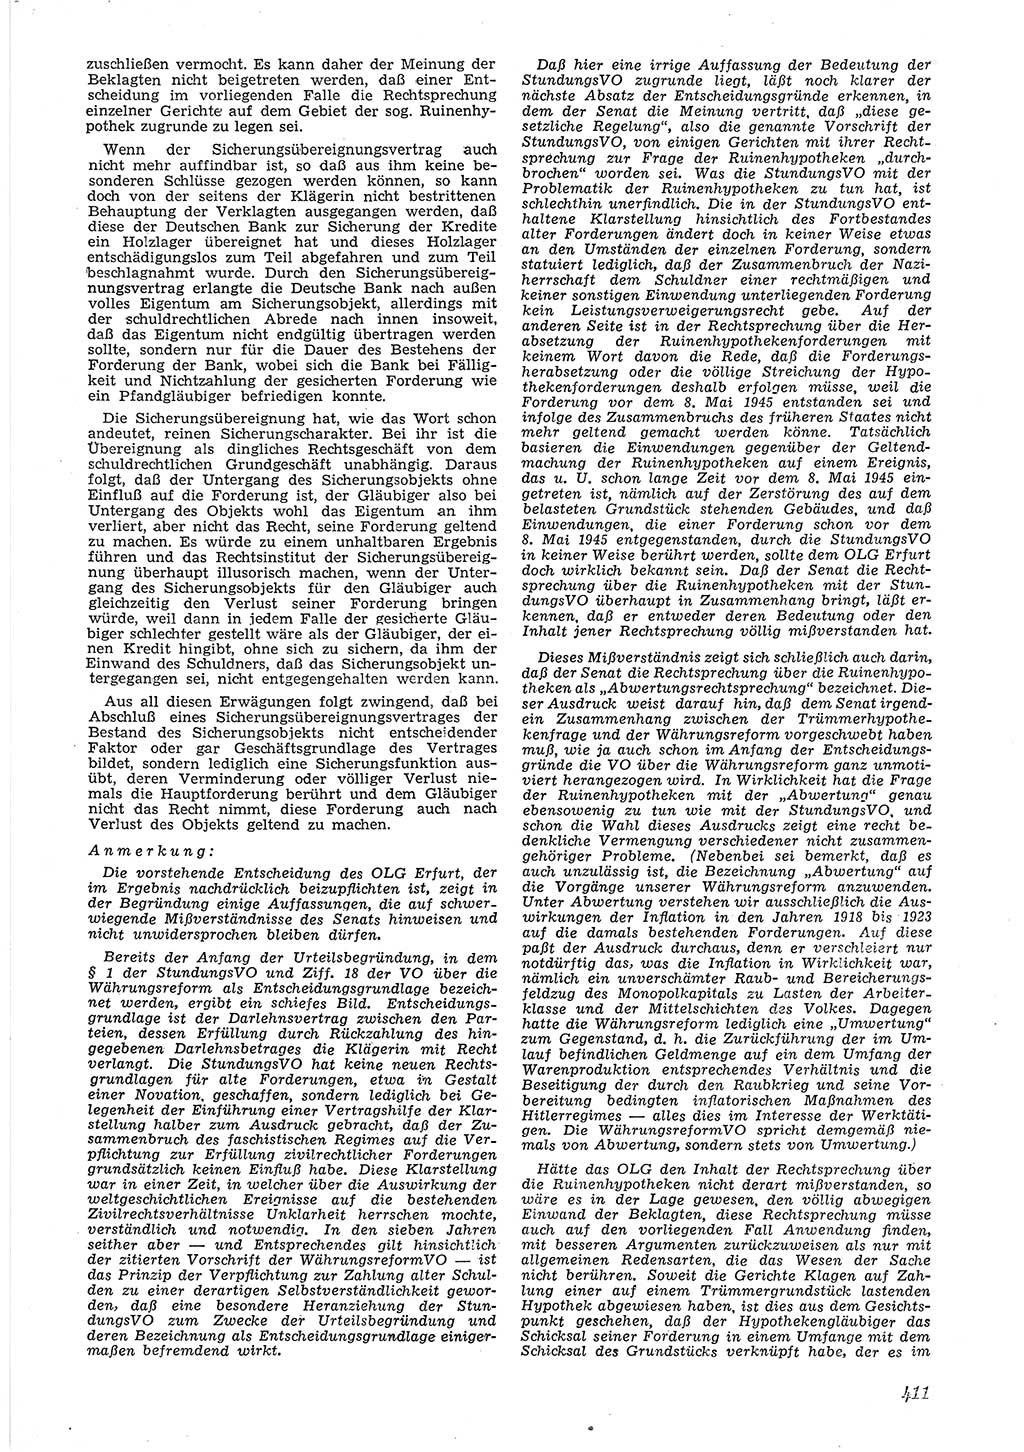 Neue Justiz (NJ), Zeitschrift für Recht und Rechtswissenschaft [Deutsche Demokratische Republik (DDR)], 6. Jahrgang 1952, Seite 411 (NJ DDR 1952, S. 411)